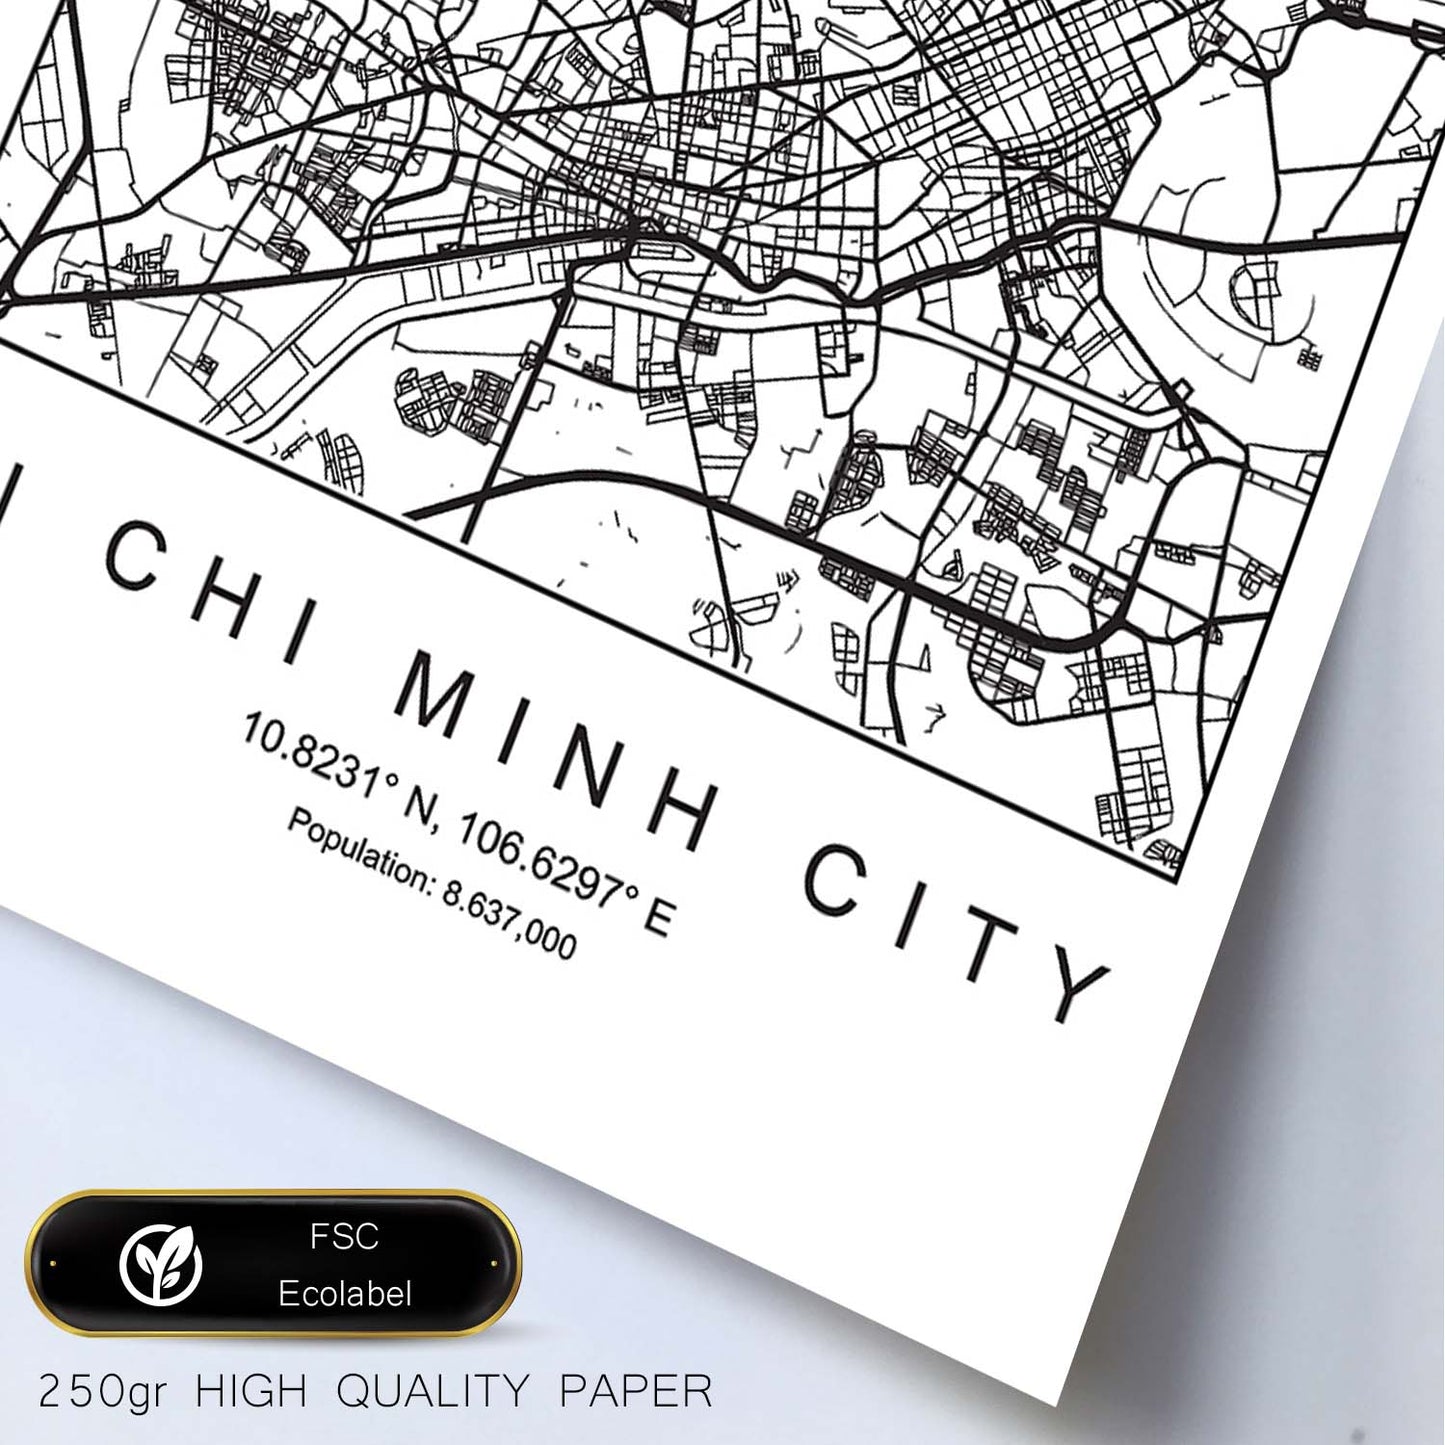 Lámina mapa de la ciudad Hi chi minh estilo nordico en blanco y negro.-Artwork-Nacnic-Nacnic Estudio SL